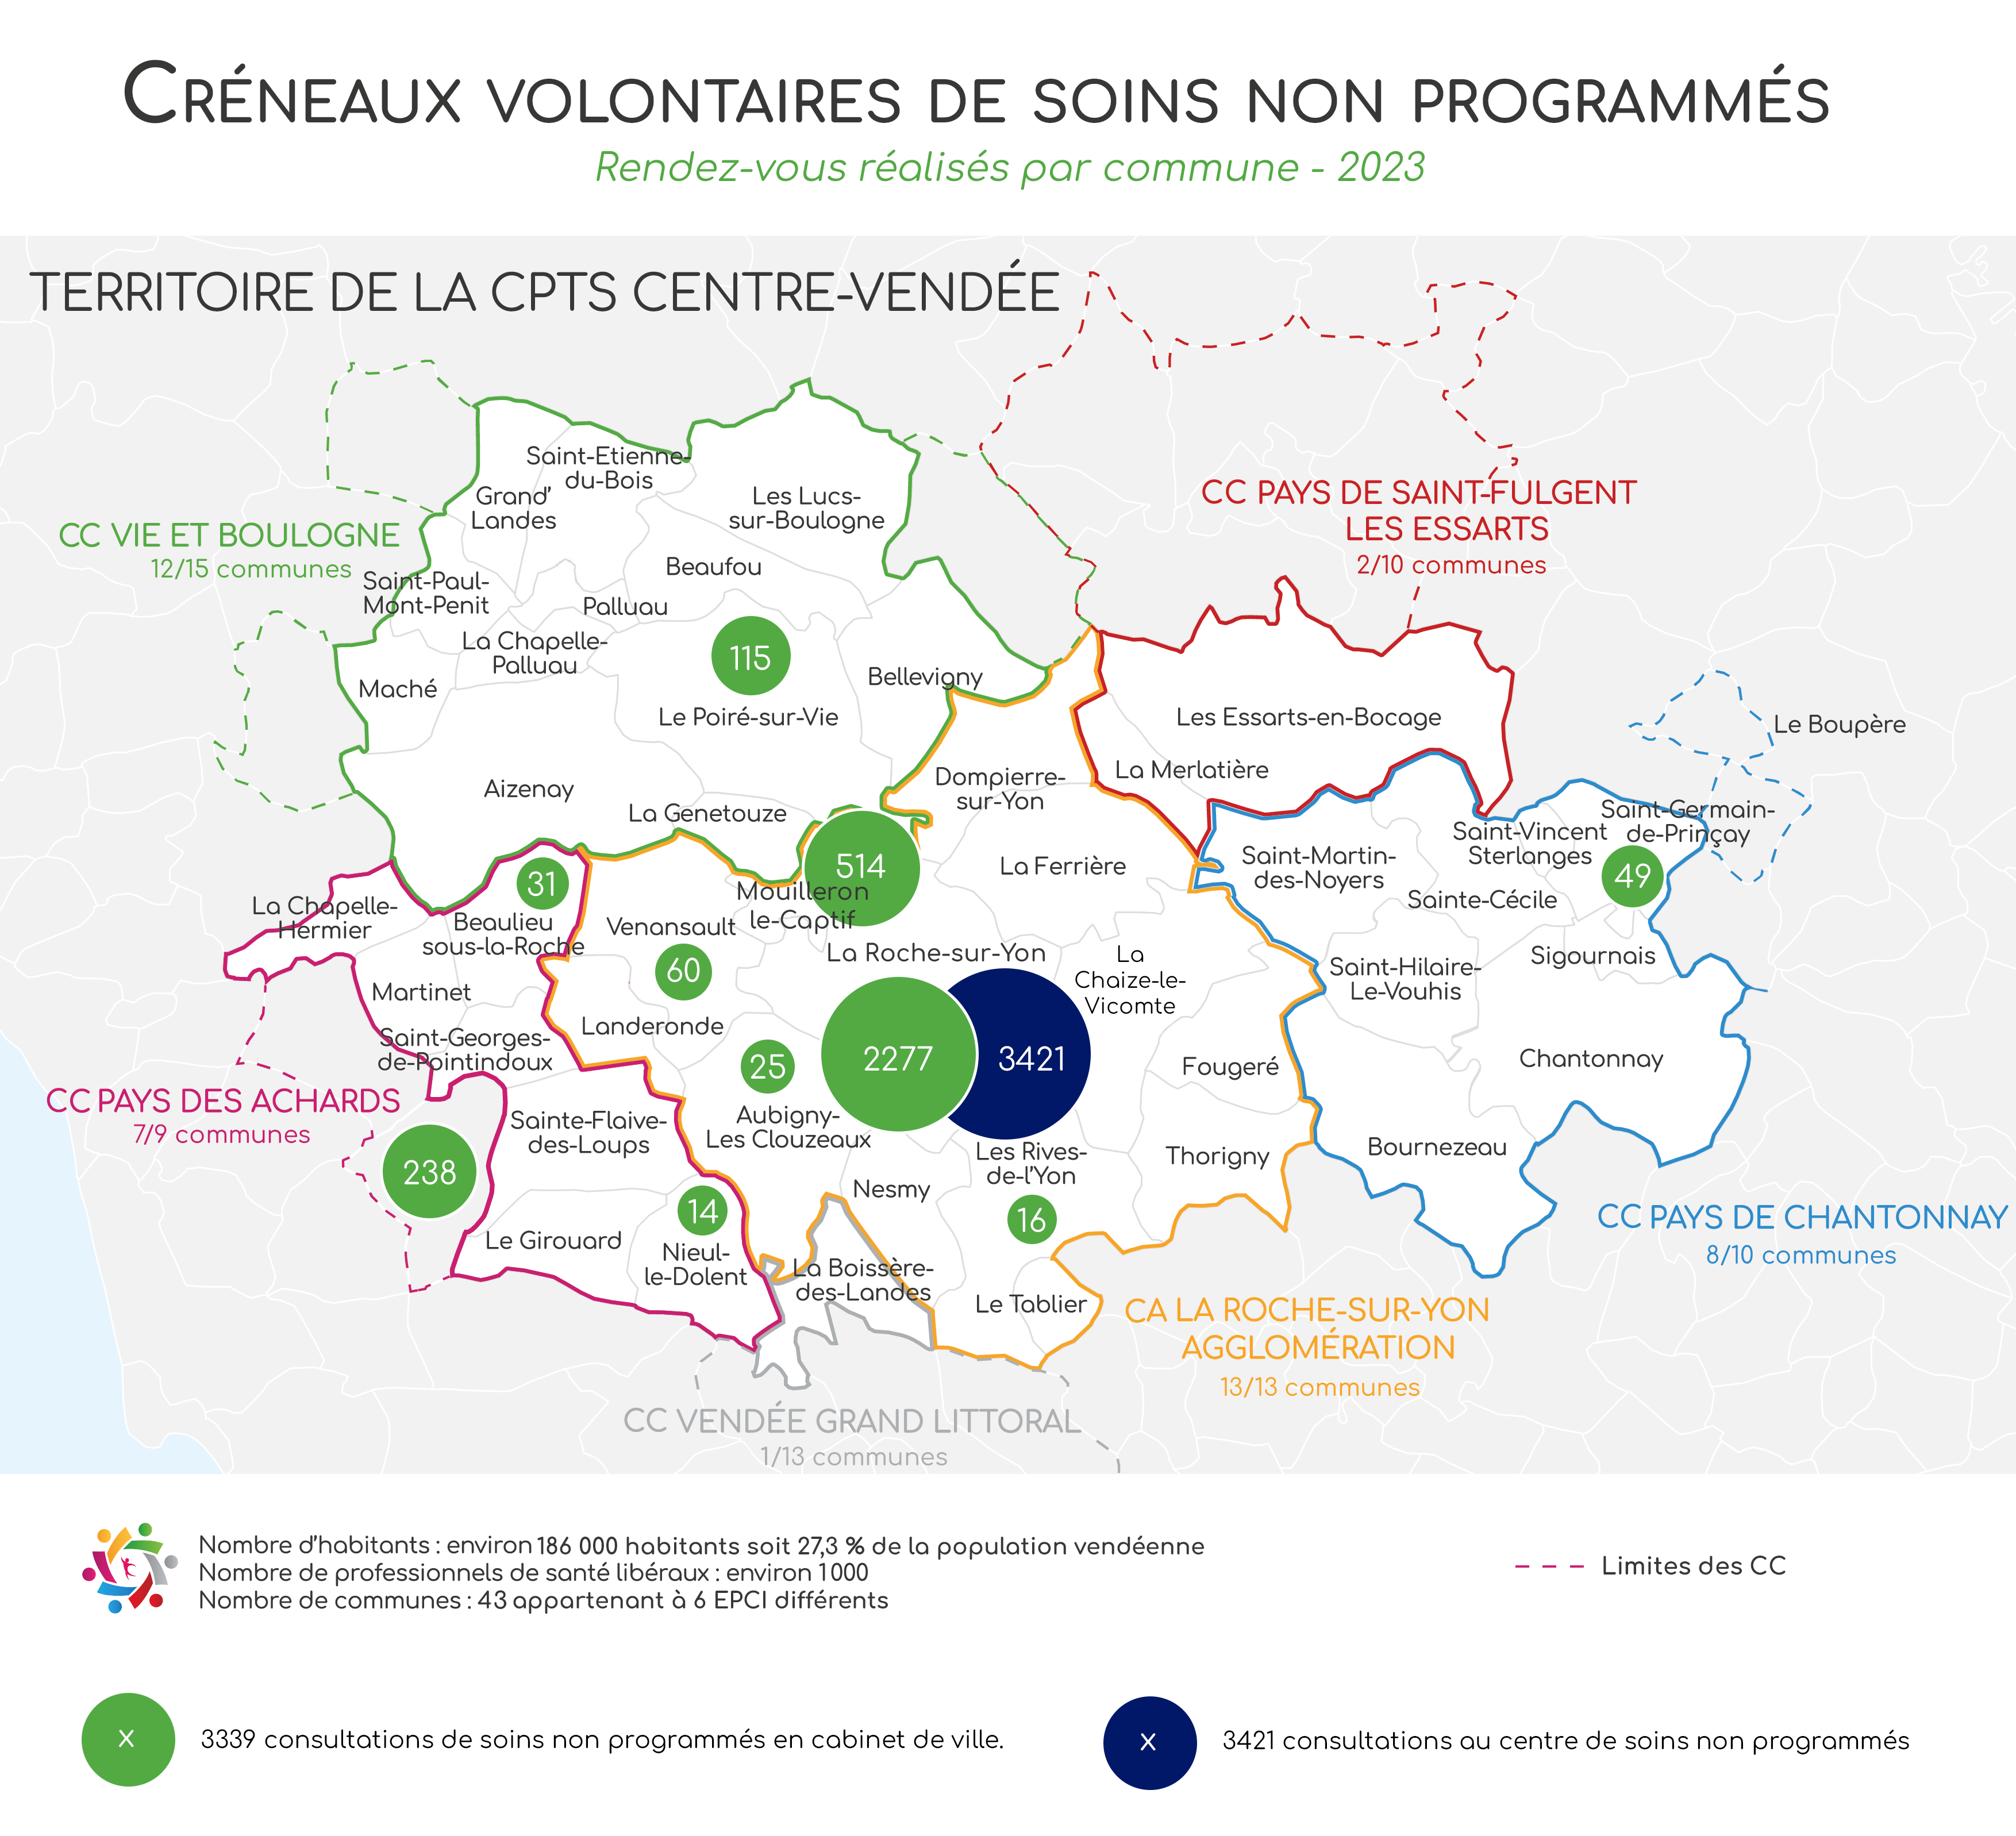 Les créneaux volontaires de soins non programmés en 2023 en Centre-Vendée